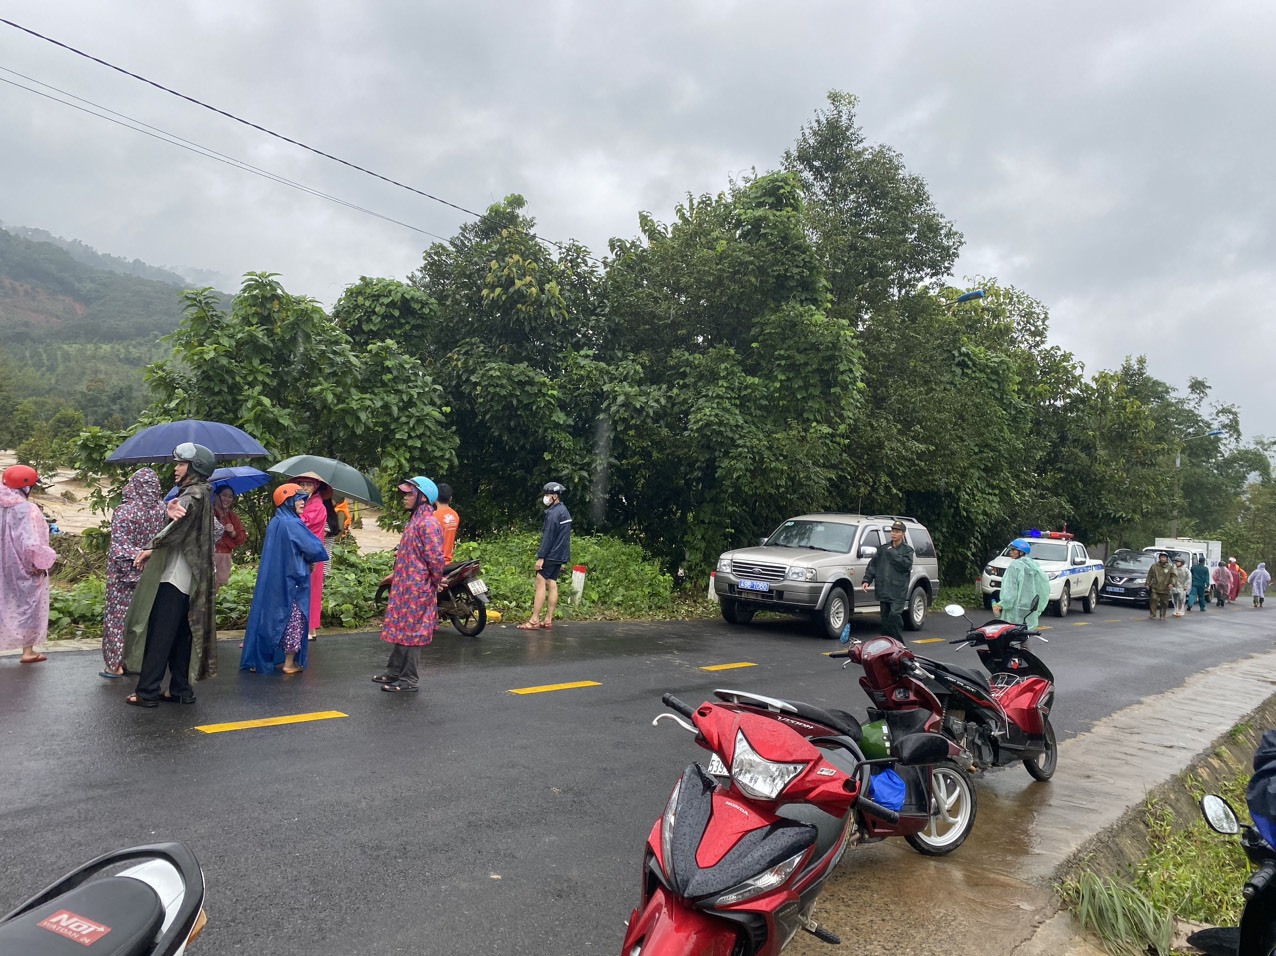 Trên địa bàn các huyện Di Linh, Bảo Lâm, Đạ Huoai và thành phố Bảo Lộc xuất hiện nhiều đợt mưa lớn kéo dài trên diện rộng. 